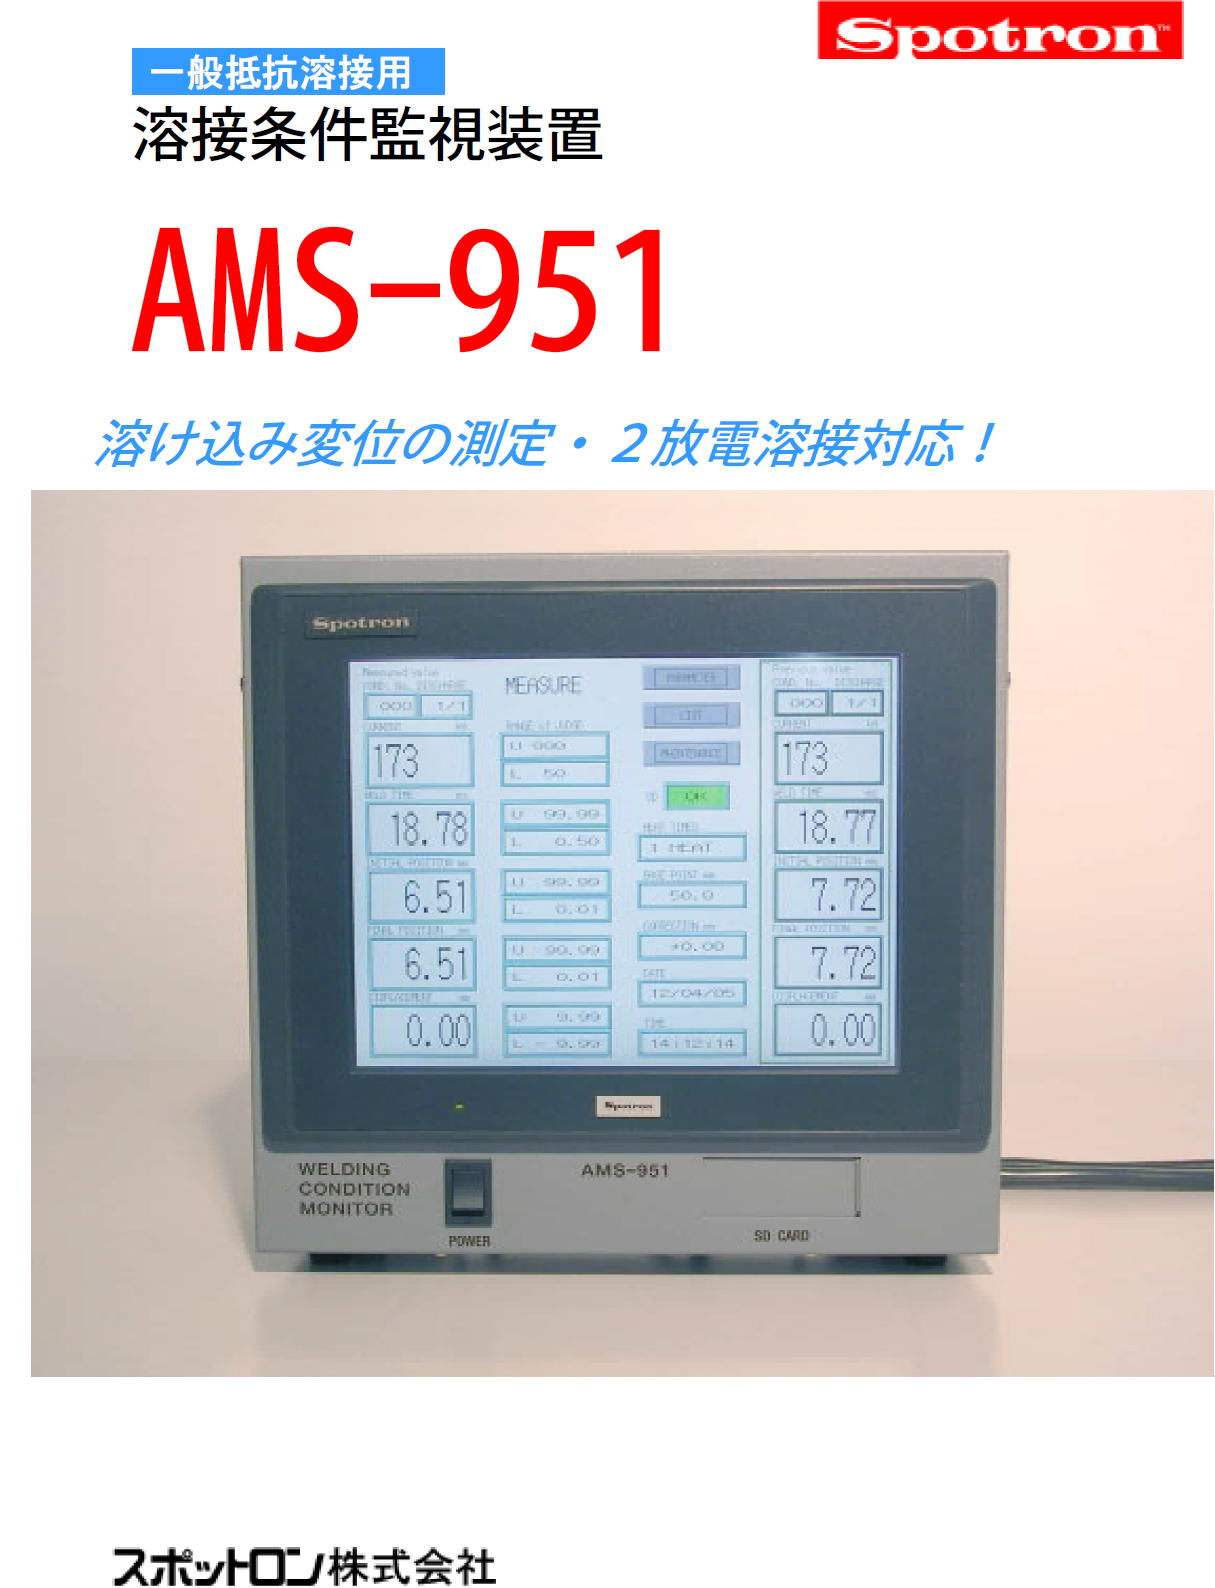 一般抵抗溶接用　溶接条件監視装置　AMS-951